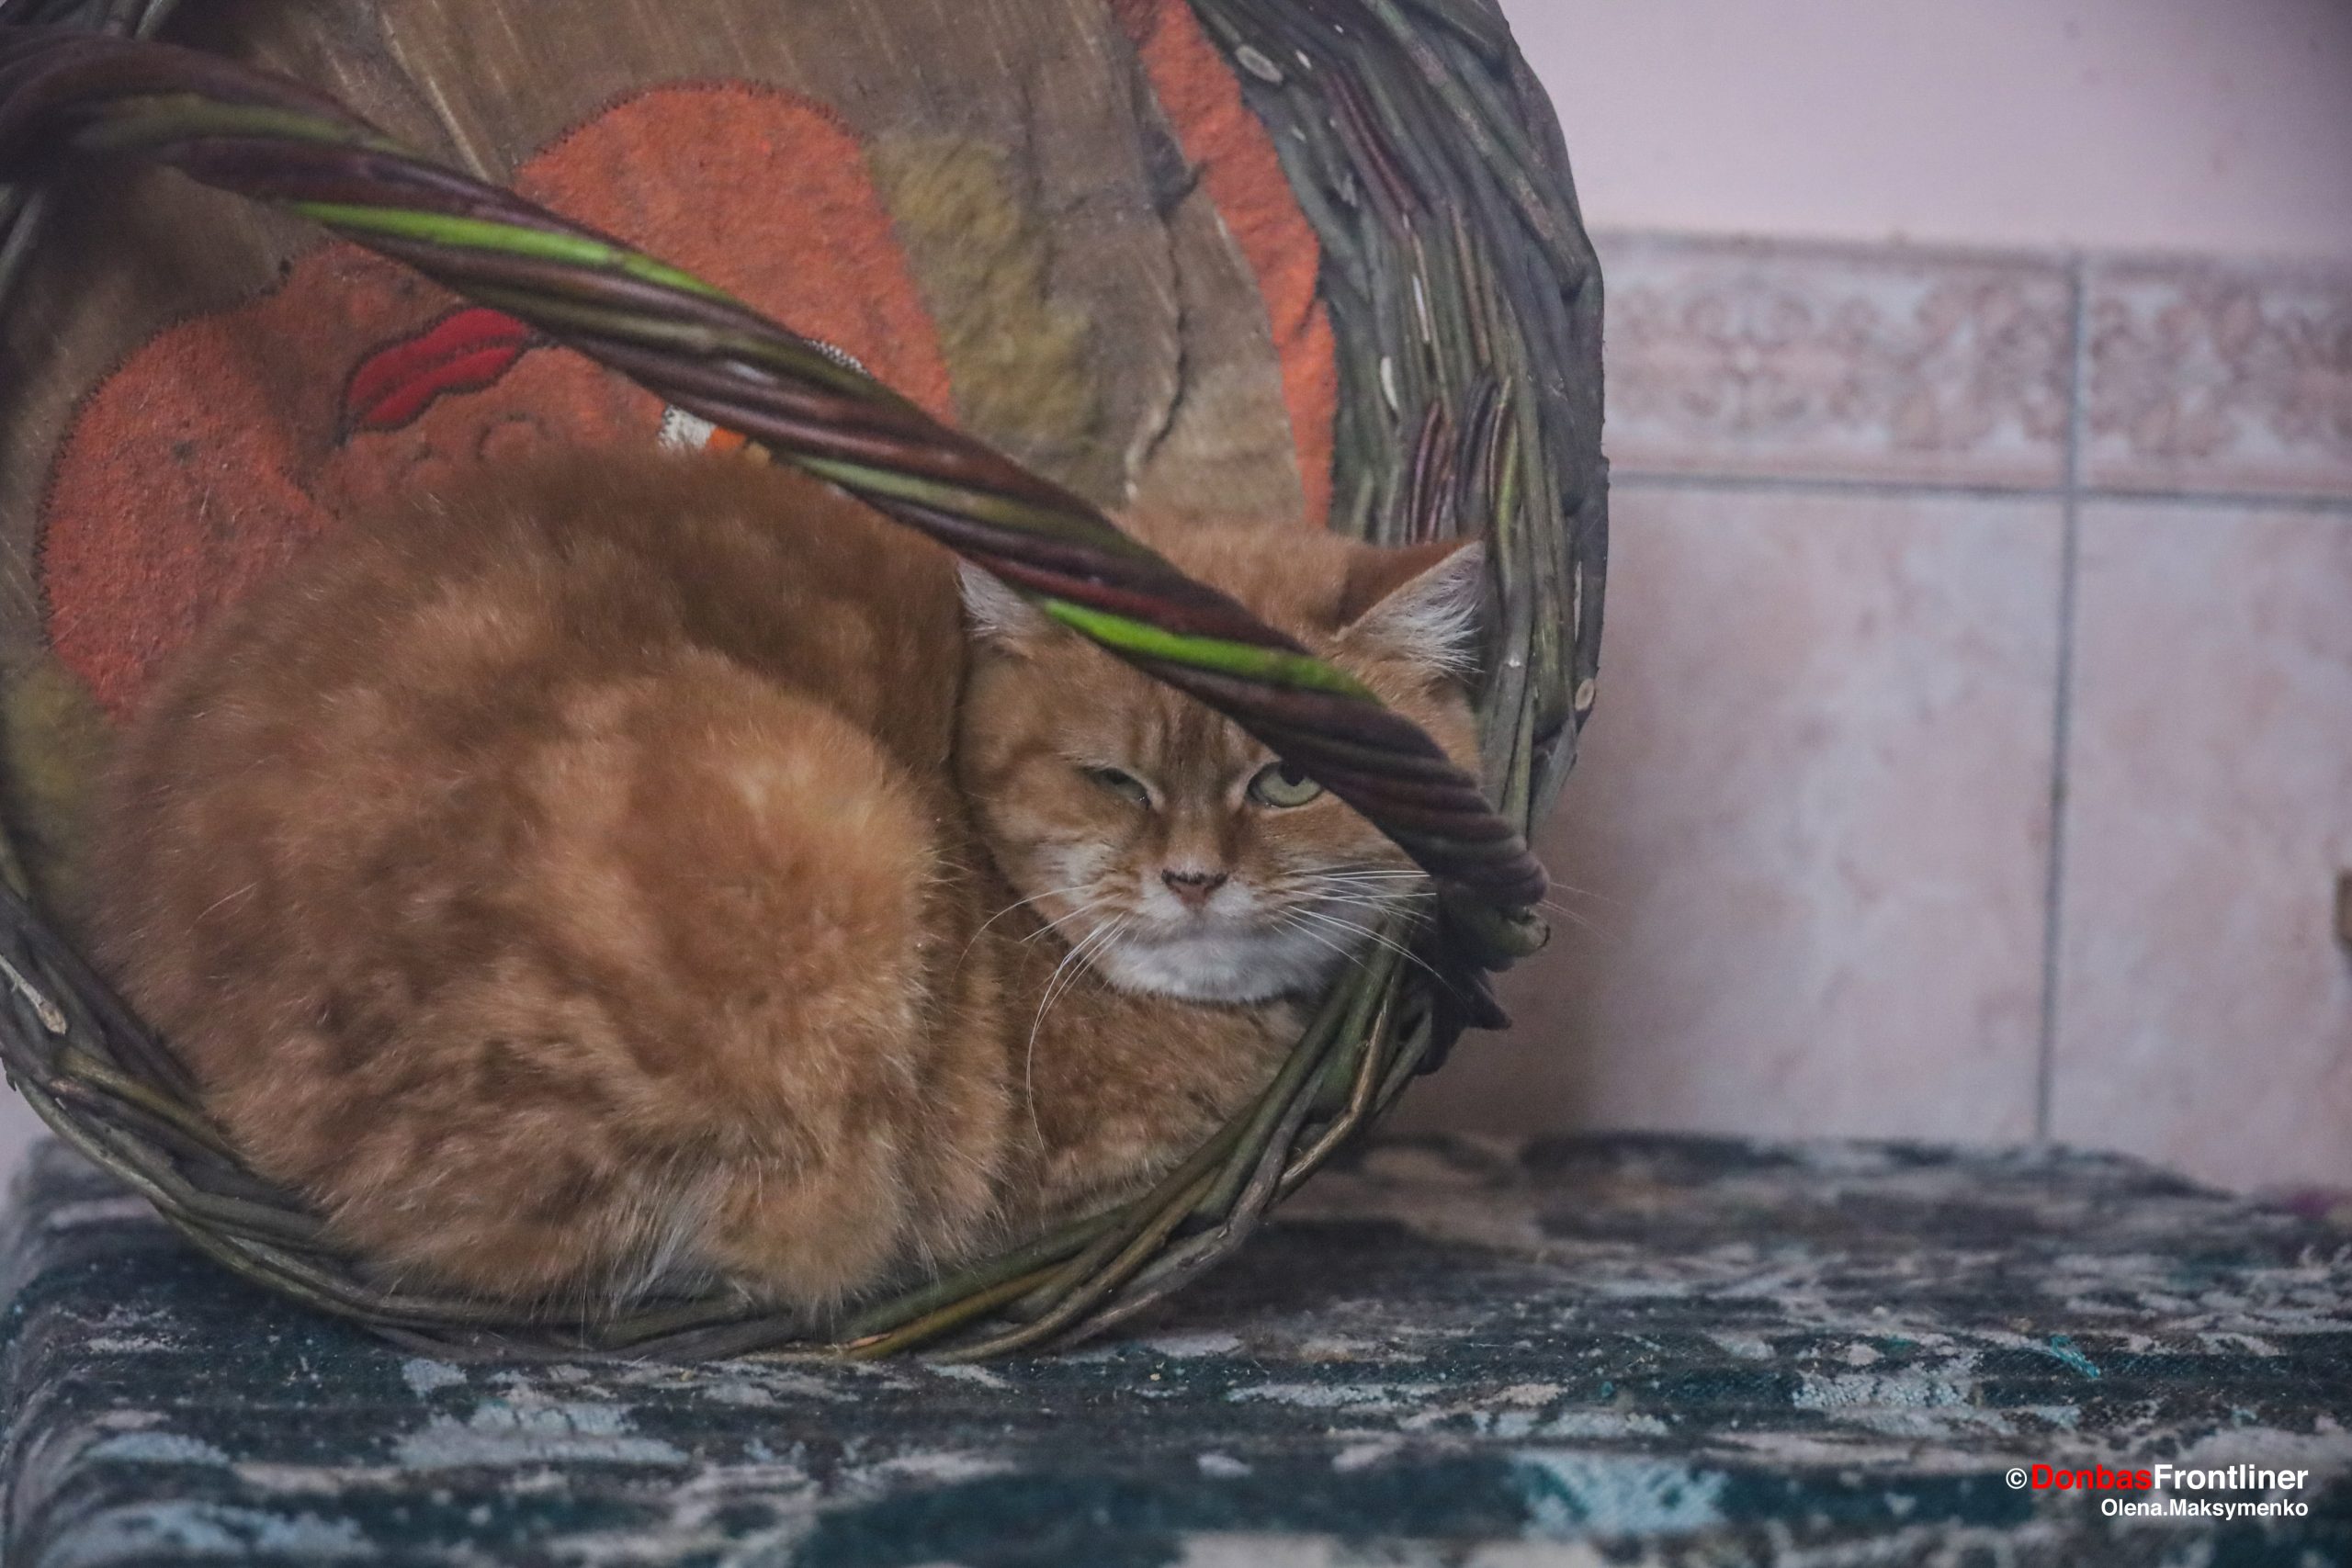 Frontliner / Коти полюбляють плетені кошики